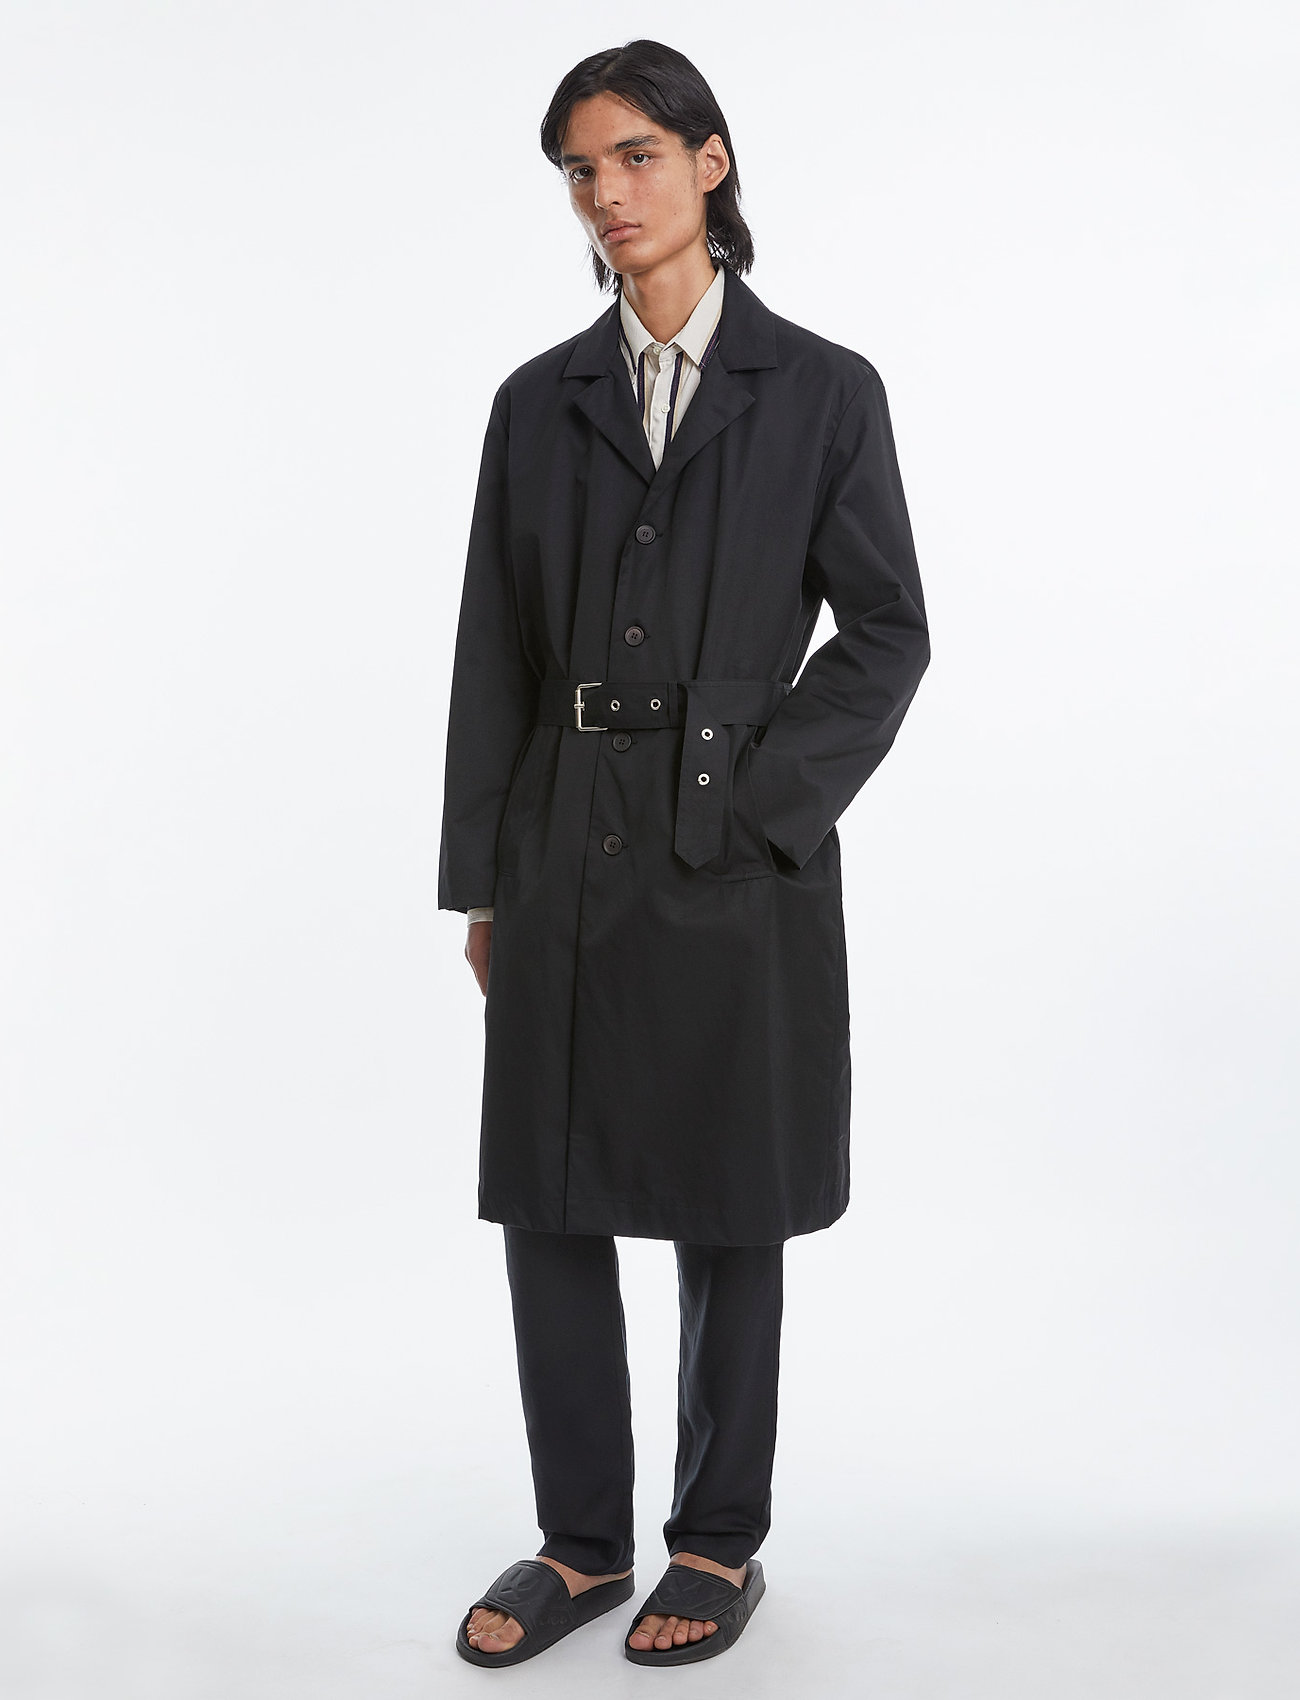 Schnayderman's - Belted Overcoat - manteaux legères - black - 0